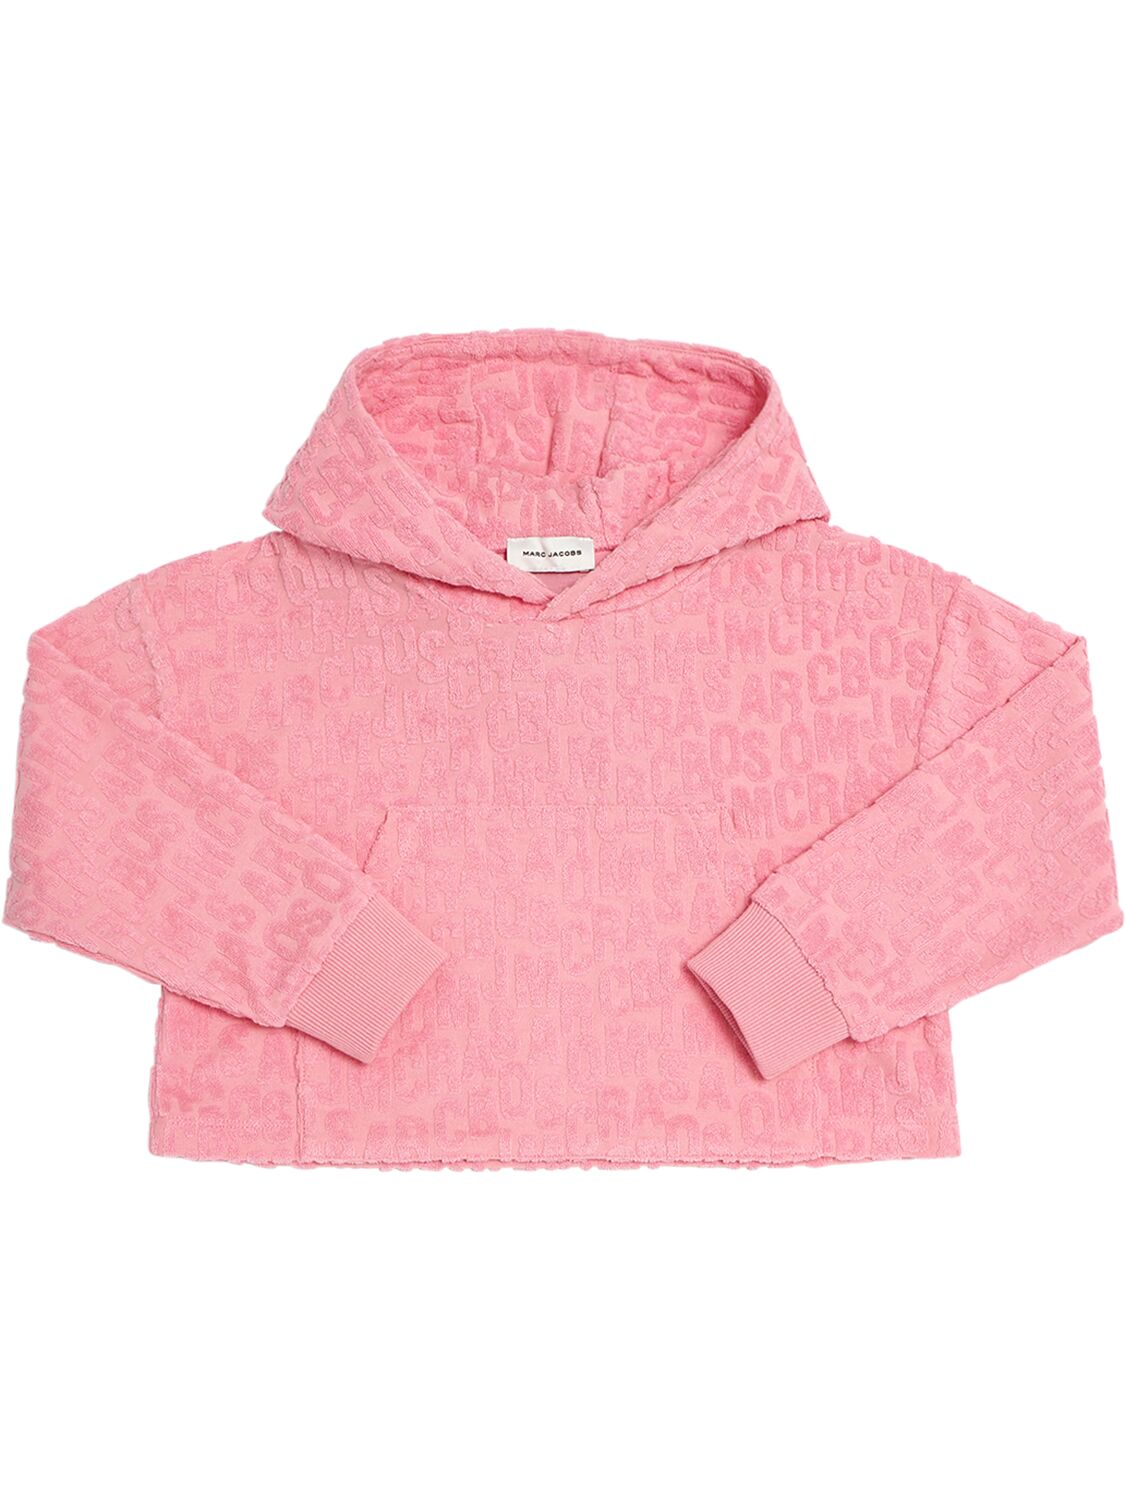 Image of Cotton Terry Hooded Sweatshirt